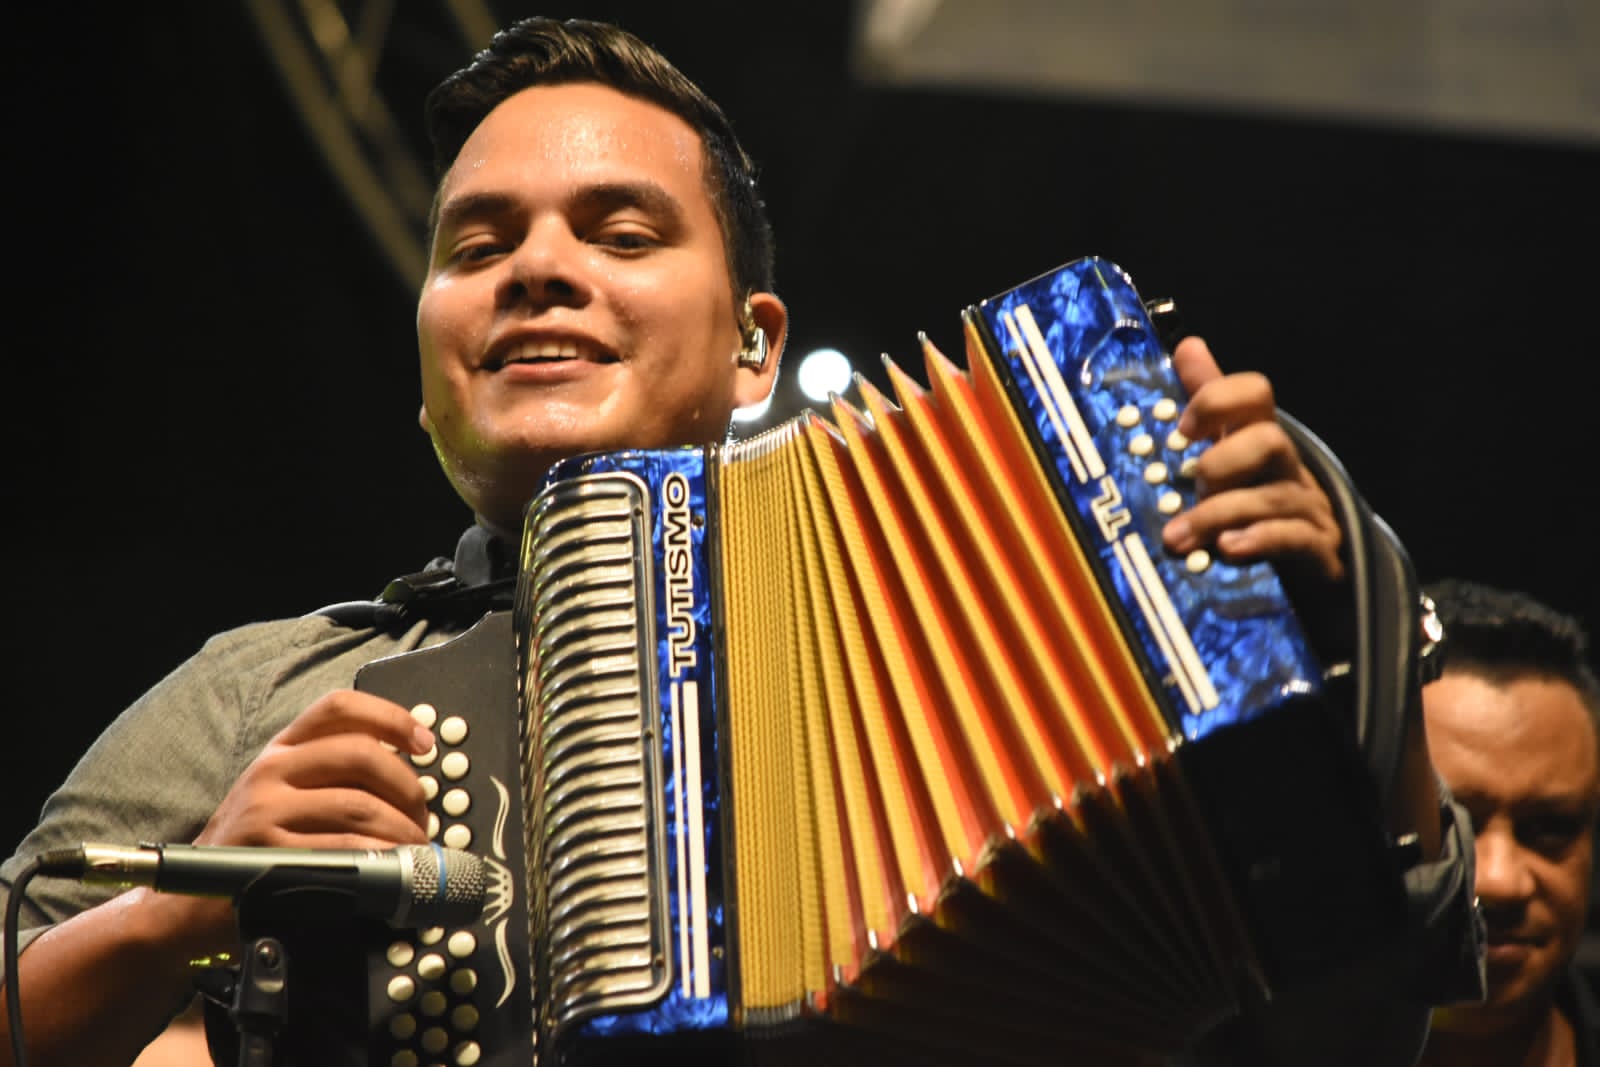 Tuto López, anuncia su participación en el Festival Vallenato 2023